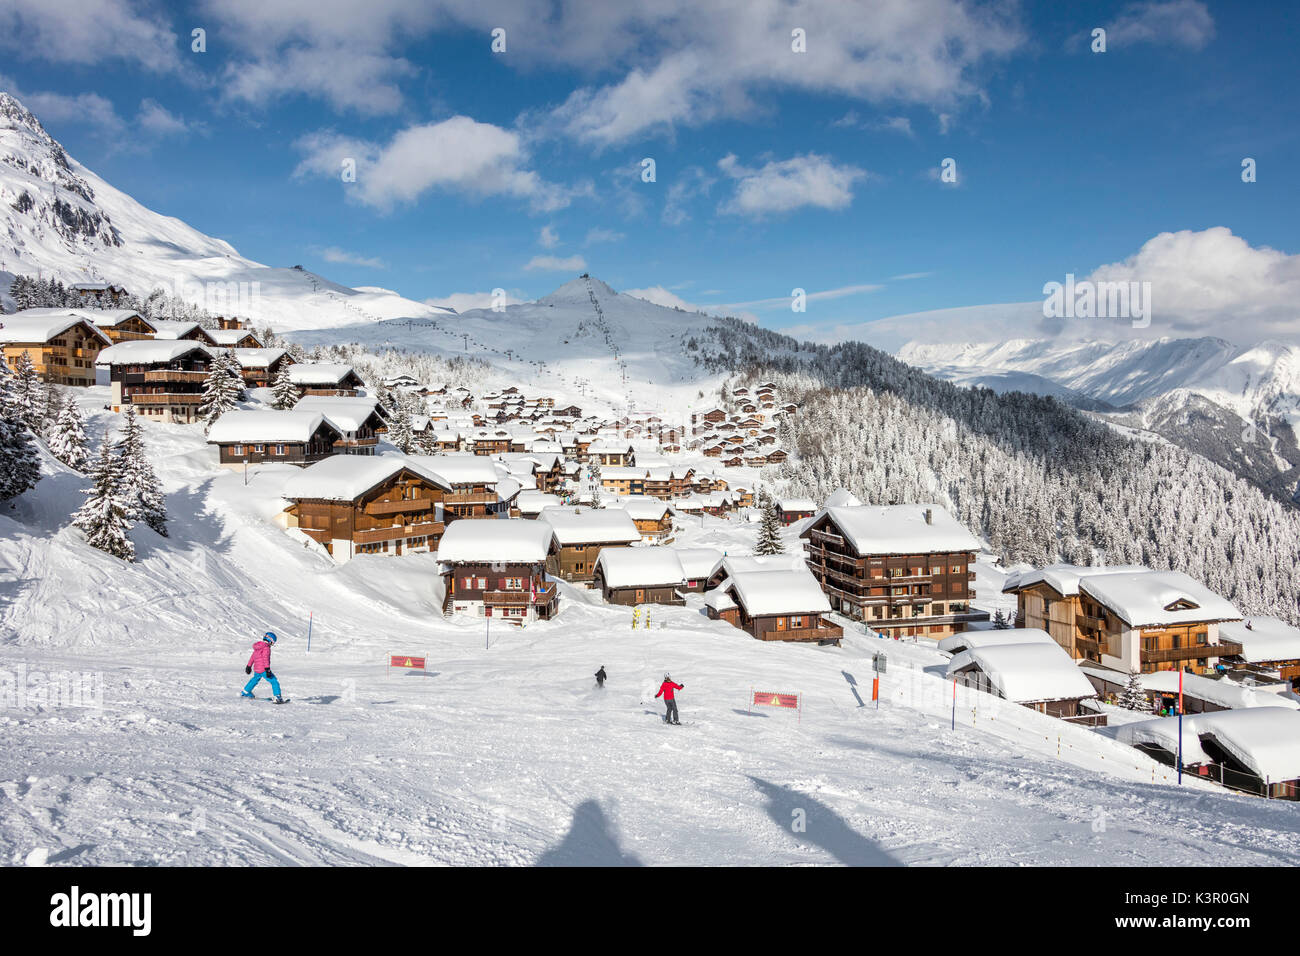 Skieurs sur les pistes de ski la trame village alpin typique Bettmeralp Française, canton du Valais Suisse Europe Banque D'Images